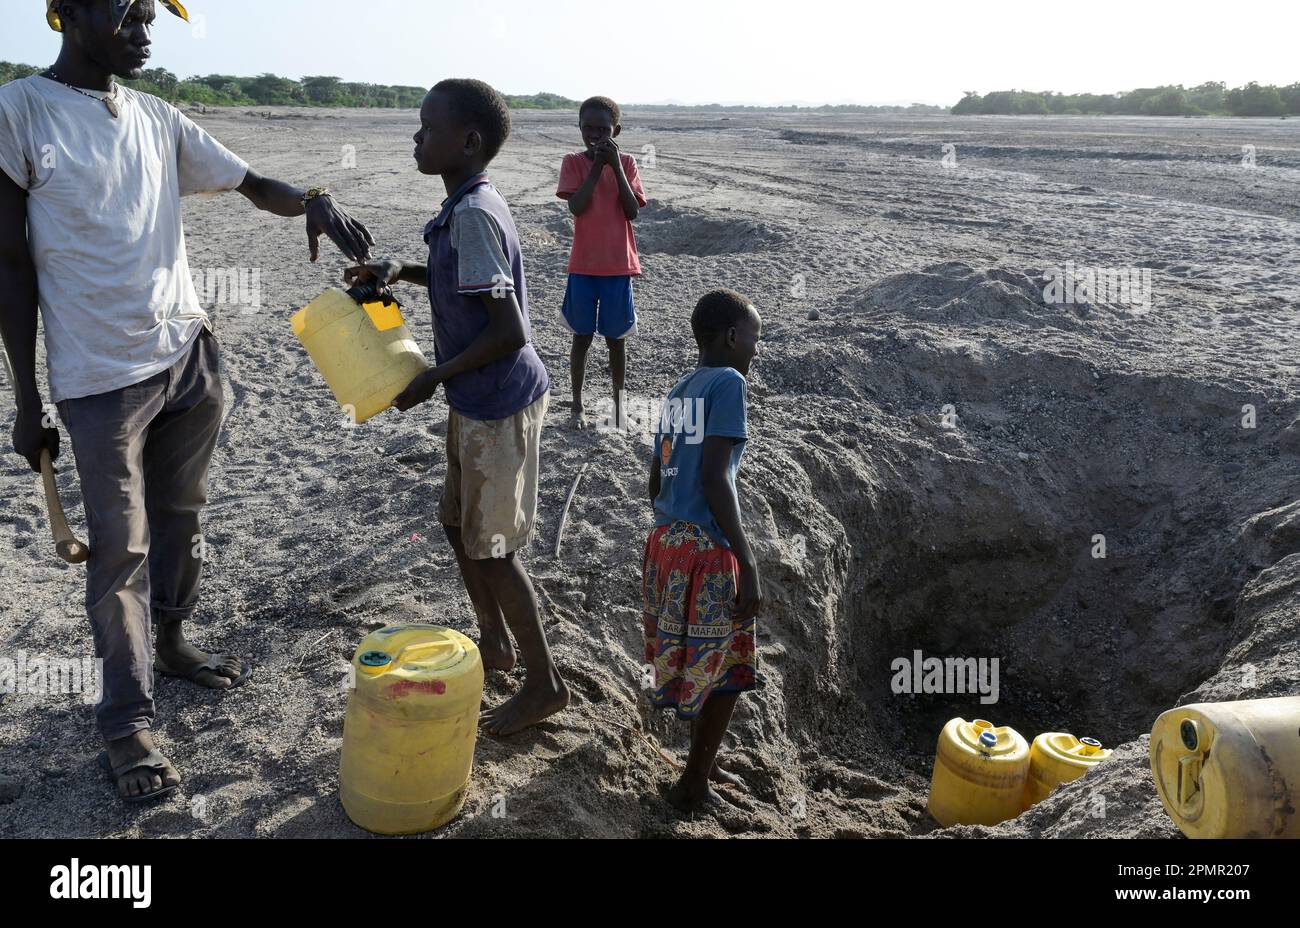 KENIA, Turkana, Dürre, trockenes Flussbett, Menschen holen Wasser aus ausgegrabenen Löchern / KENIA, Turkana, Dürre, trockenes Flußbett, Wasserloch, Menschen schöpfen Wasser aus gegrabenen Löchern im Fluß Stockfoto